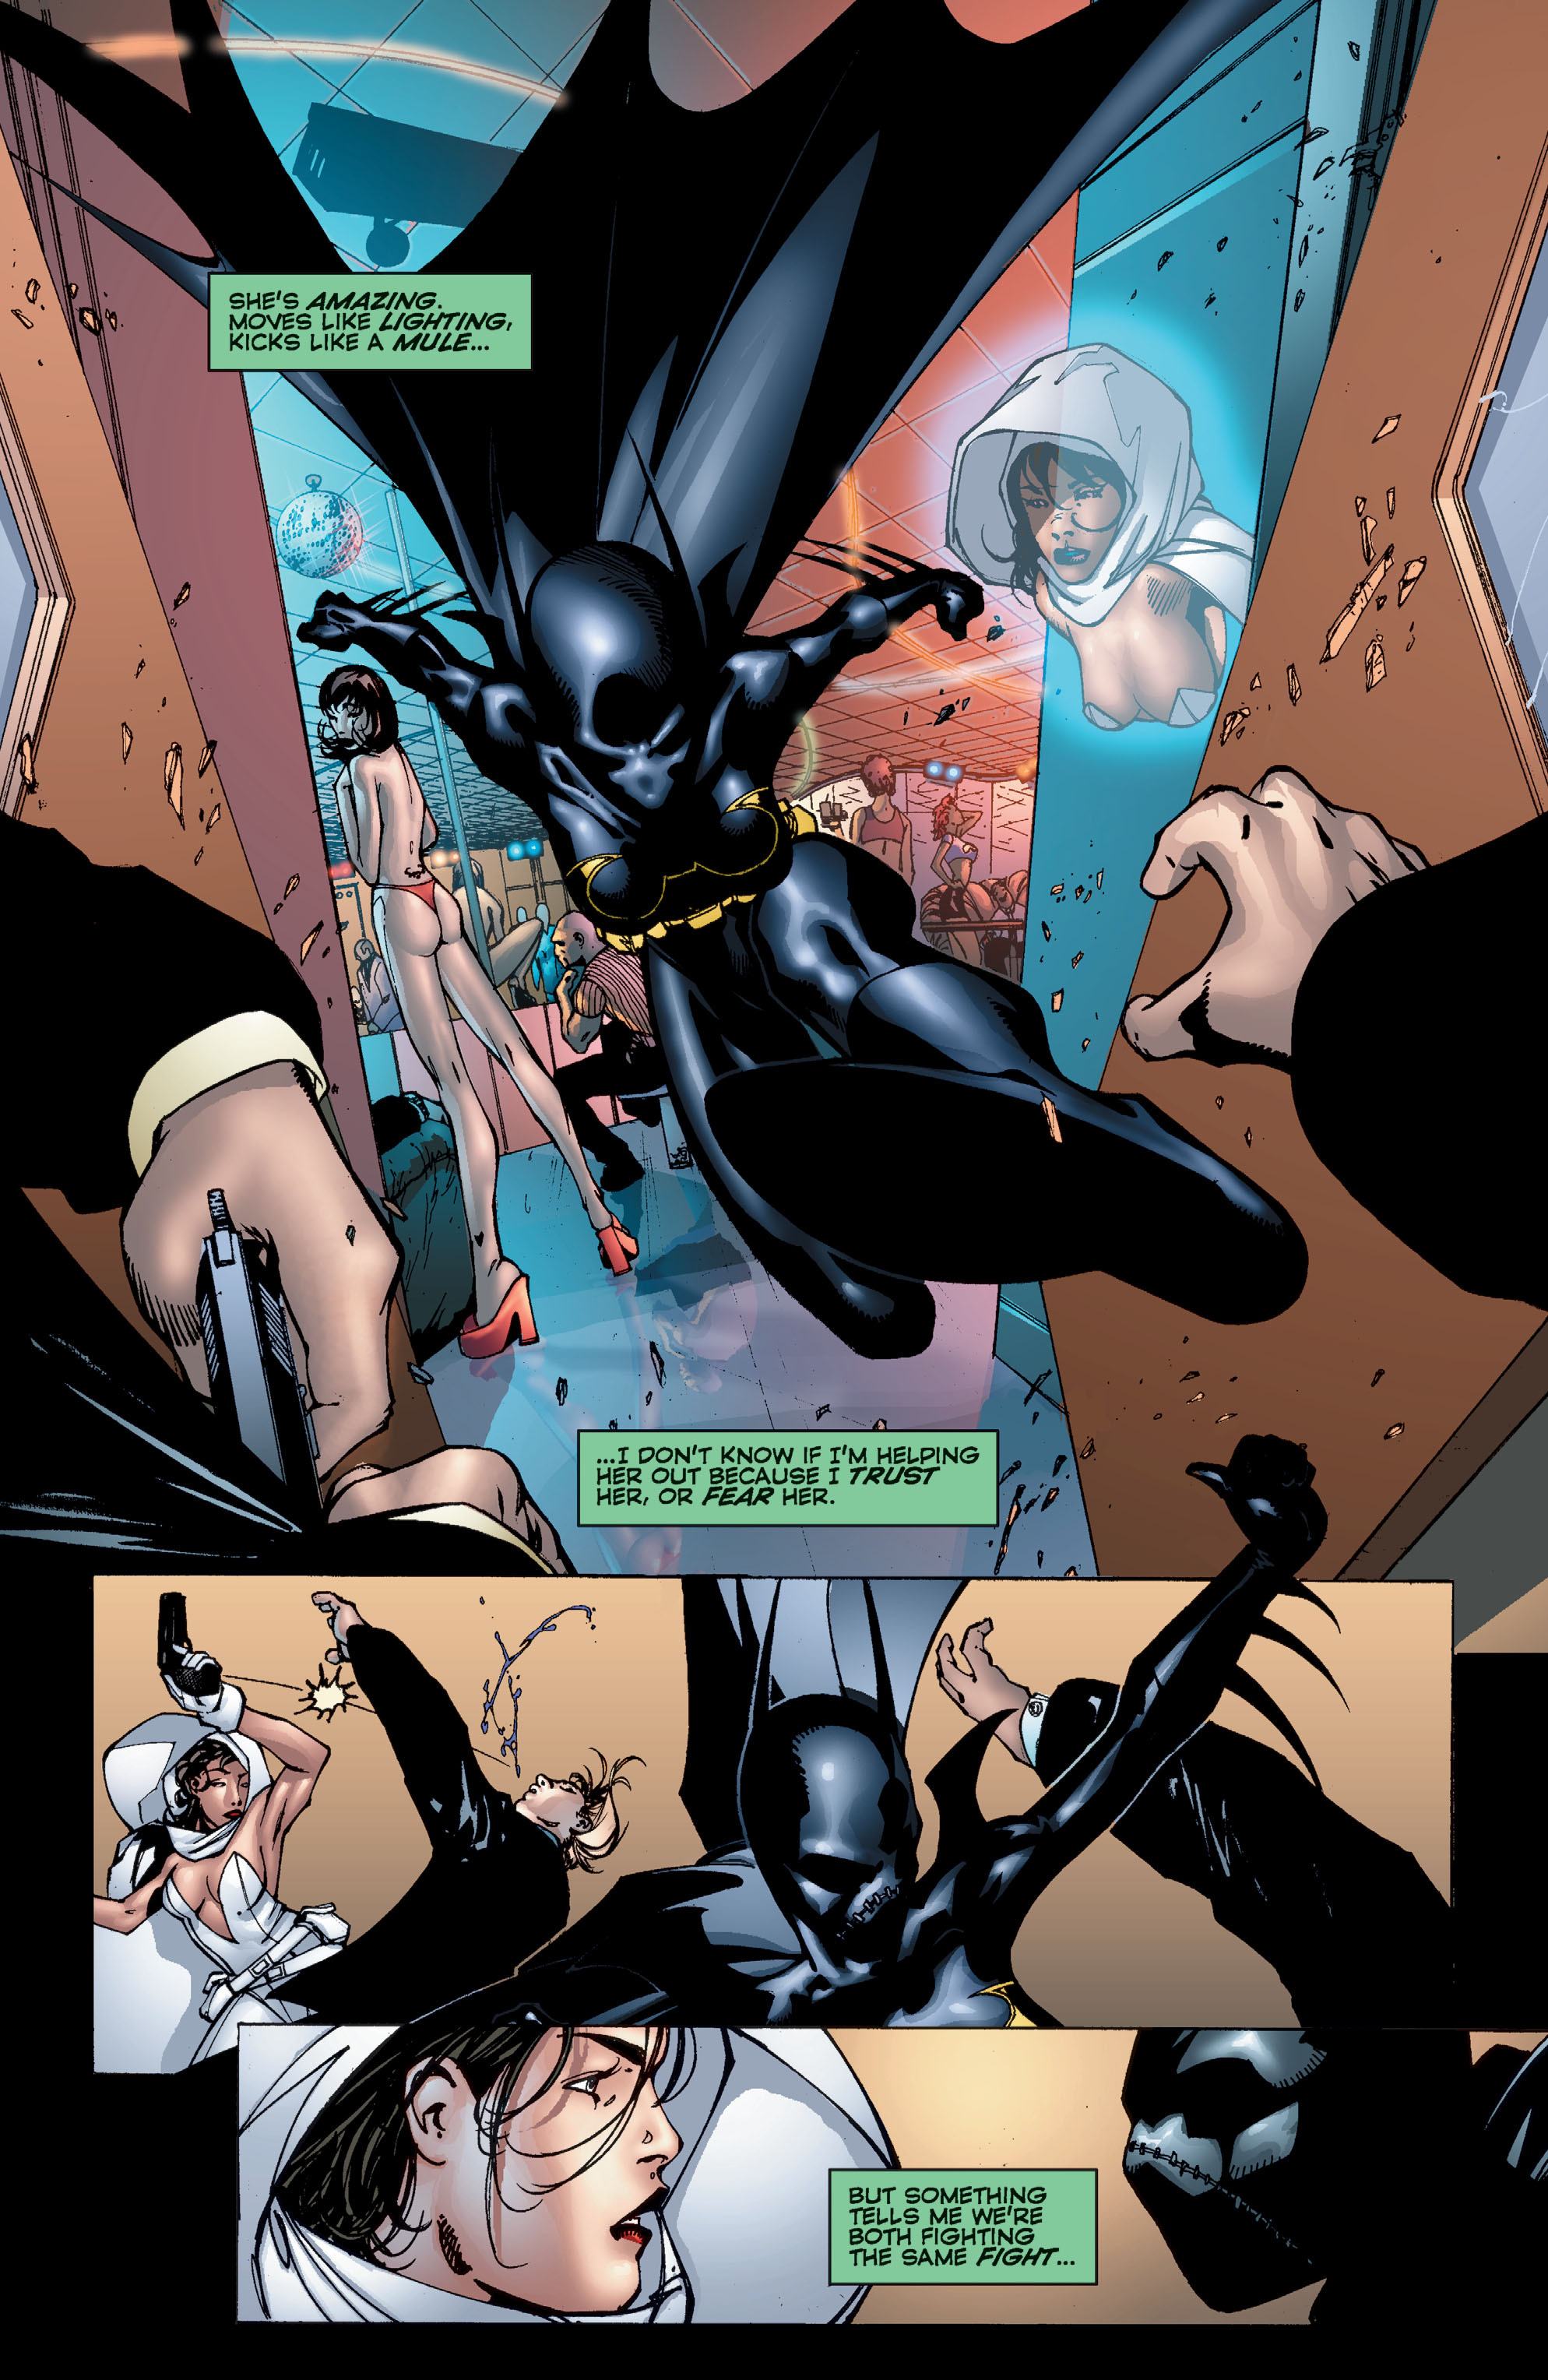 DC Comics/Dark Horse Comics: Justice League Full #1 - English 325